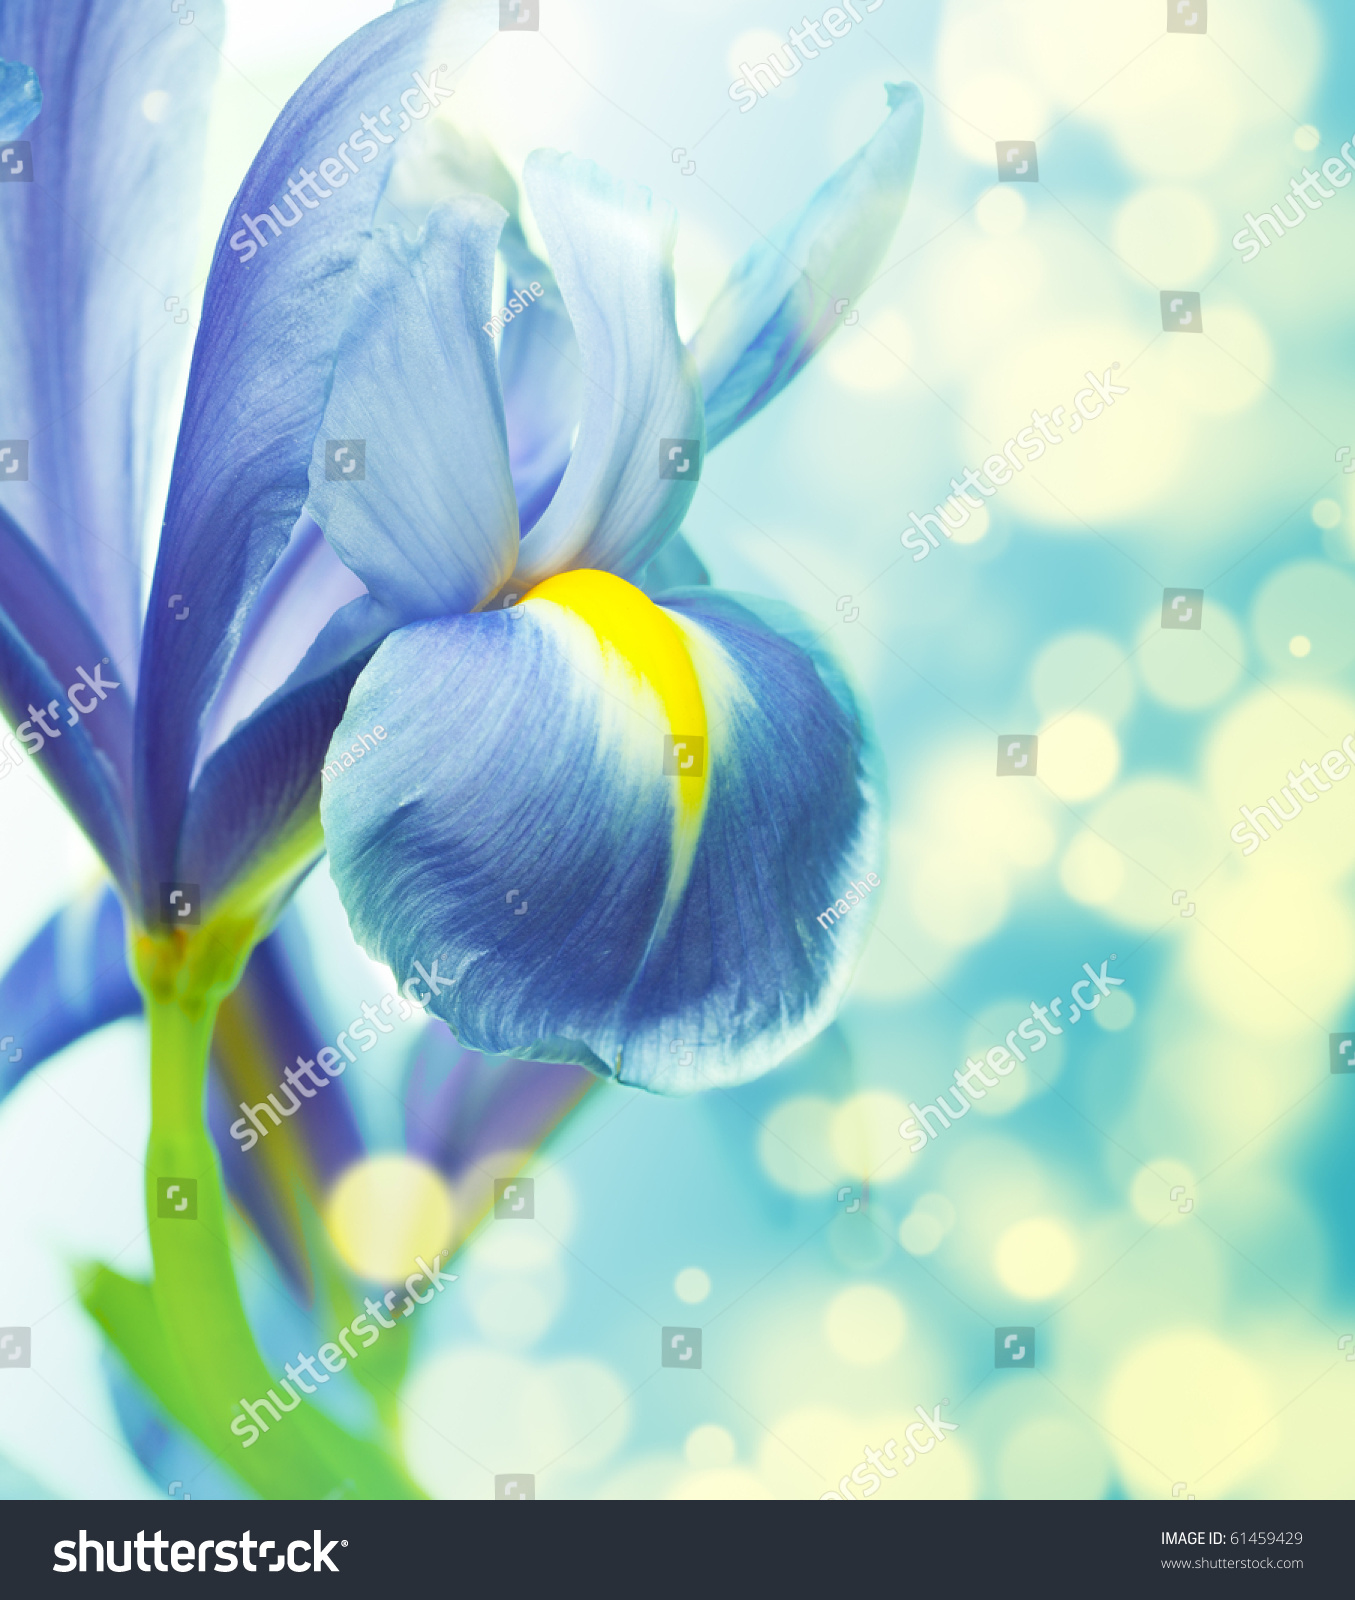 Beautiful Fresh Iris Flowers Stock Photo 61459429 - Shutterstock